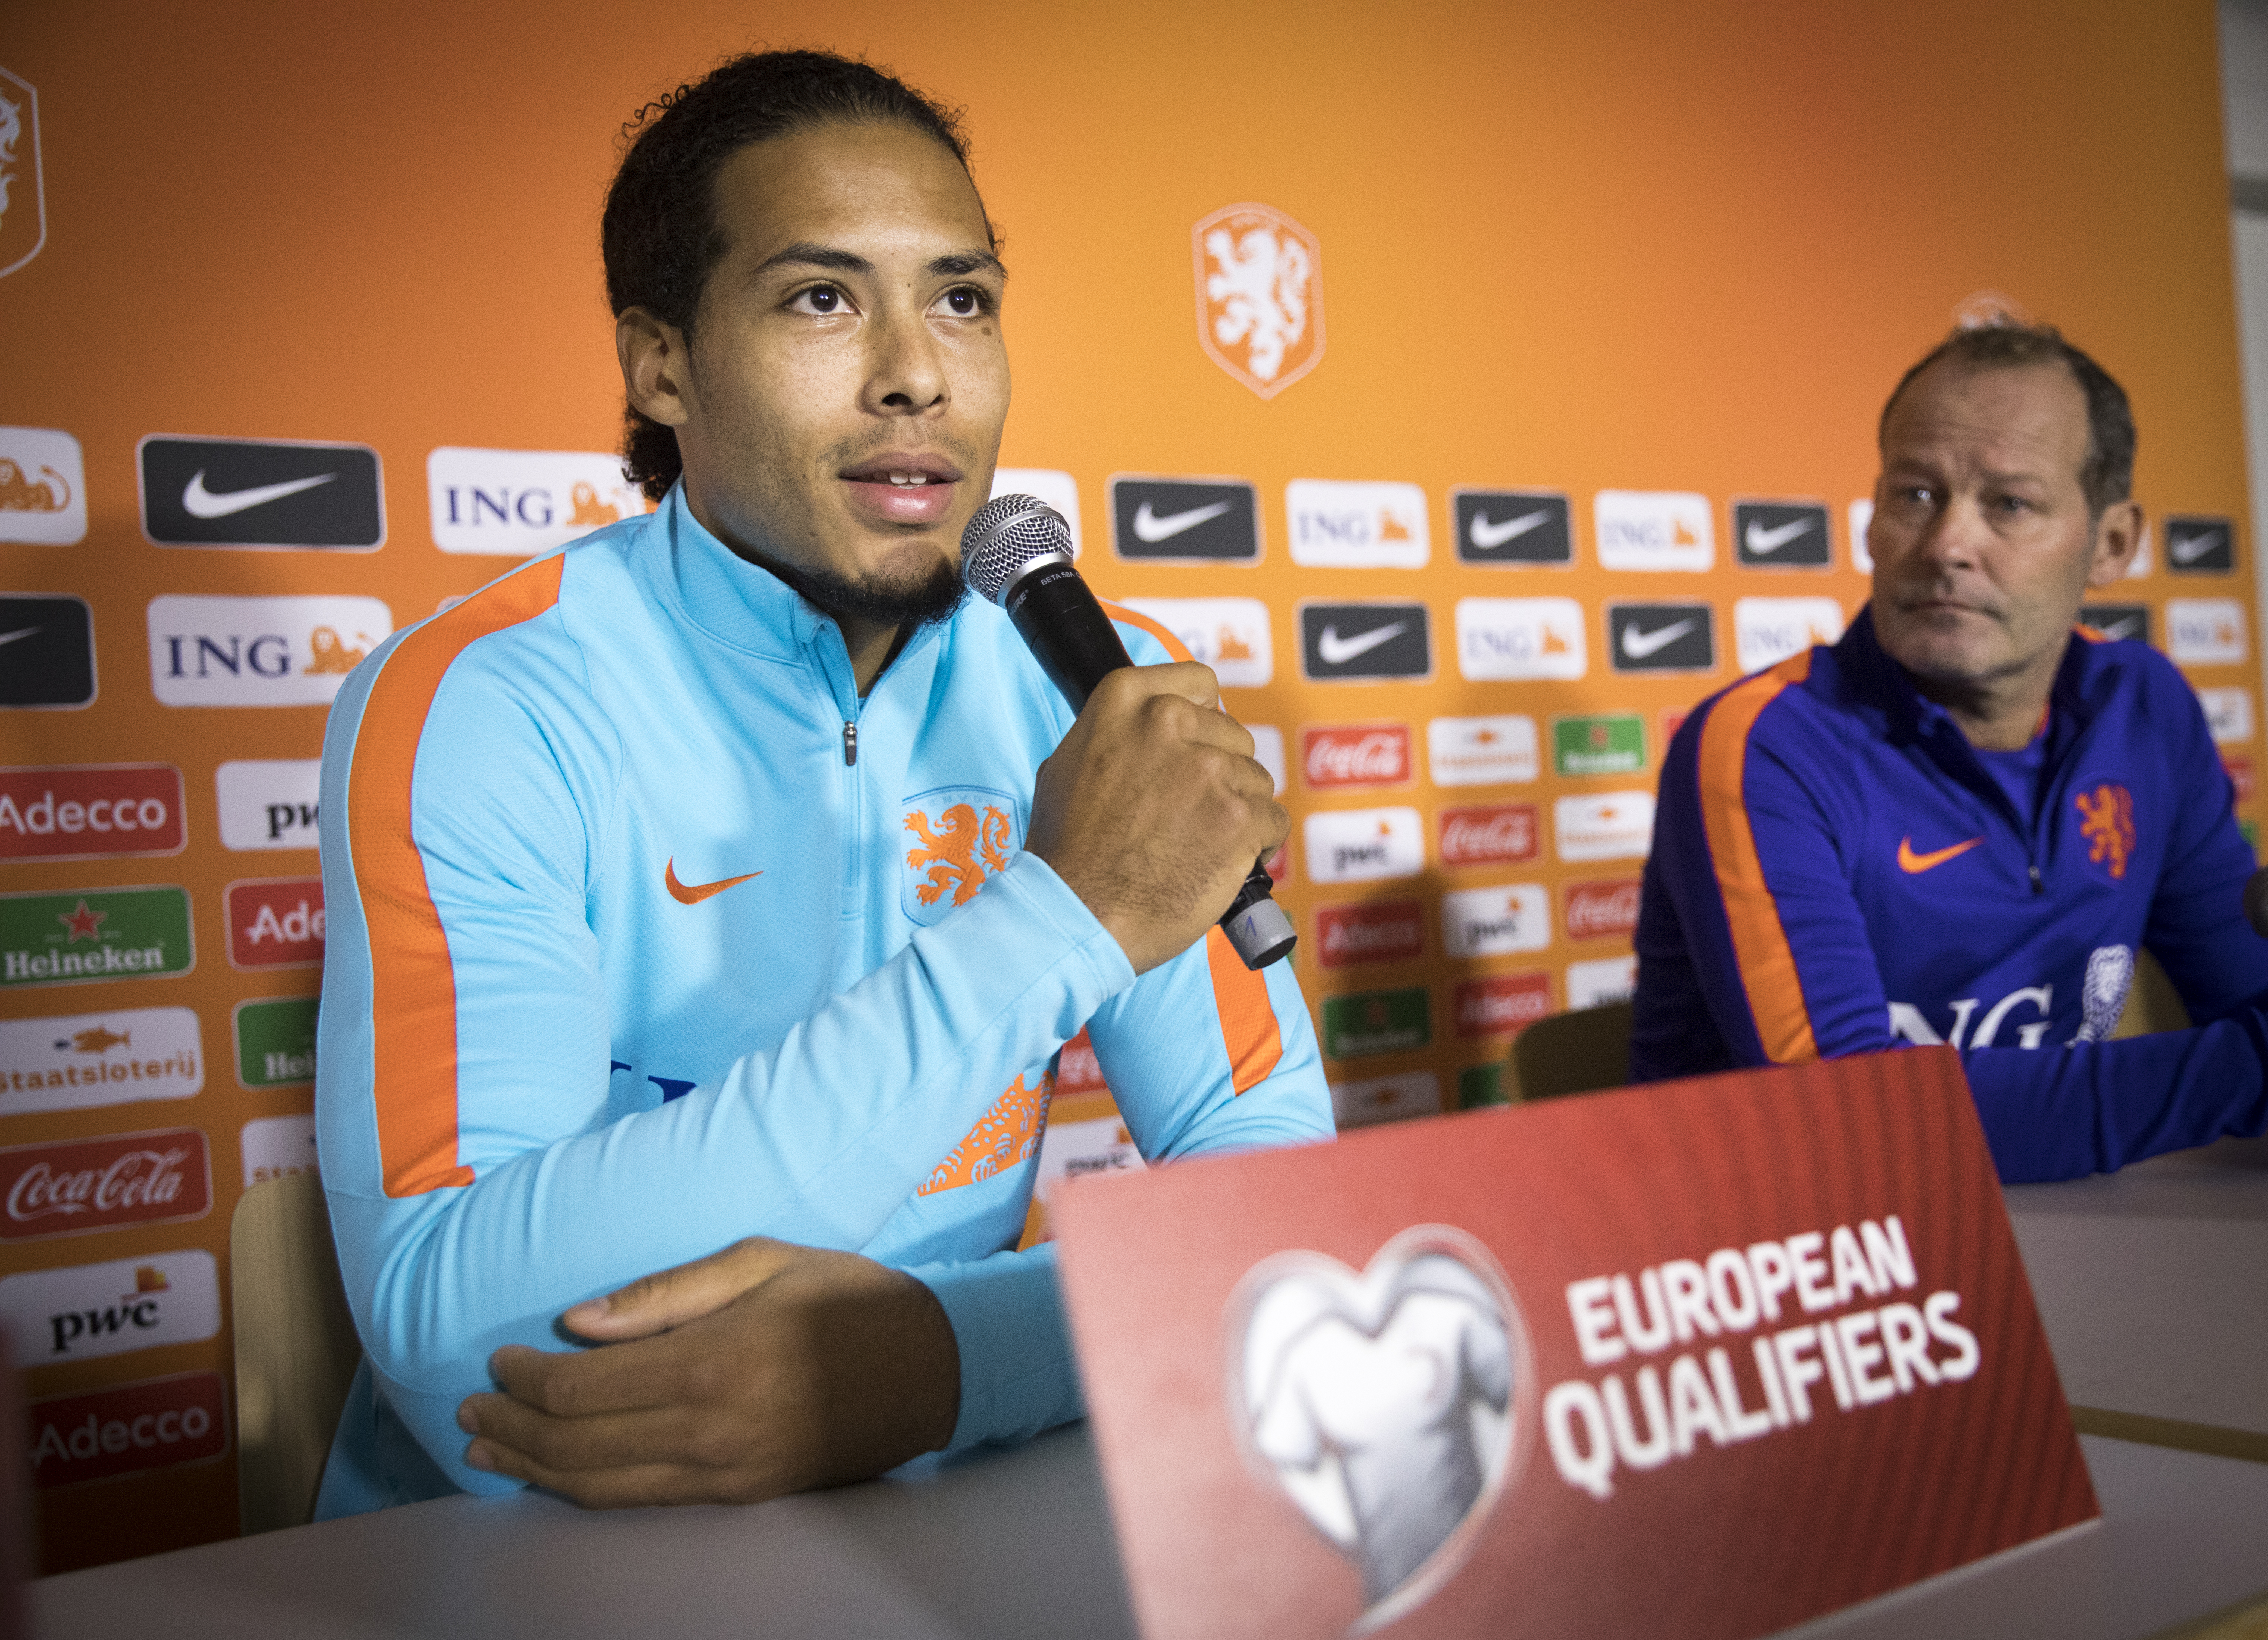 2016-11-12 19:30:02 LUXENBURG - Danny Blind en Virgil van Dijk tijdens de persconferentie van het Nederlandse elftal in het Stade Josy Barthel. Oranje bereidt zich voor op de kwalificatiewedstrijd tegen Luxemburg. ANP JERRY LAMPEN